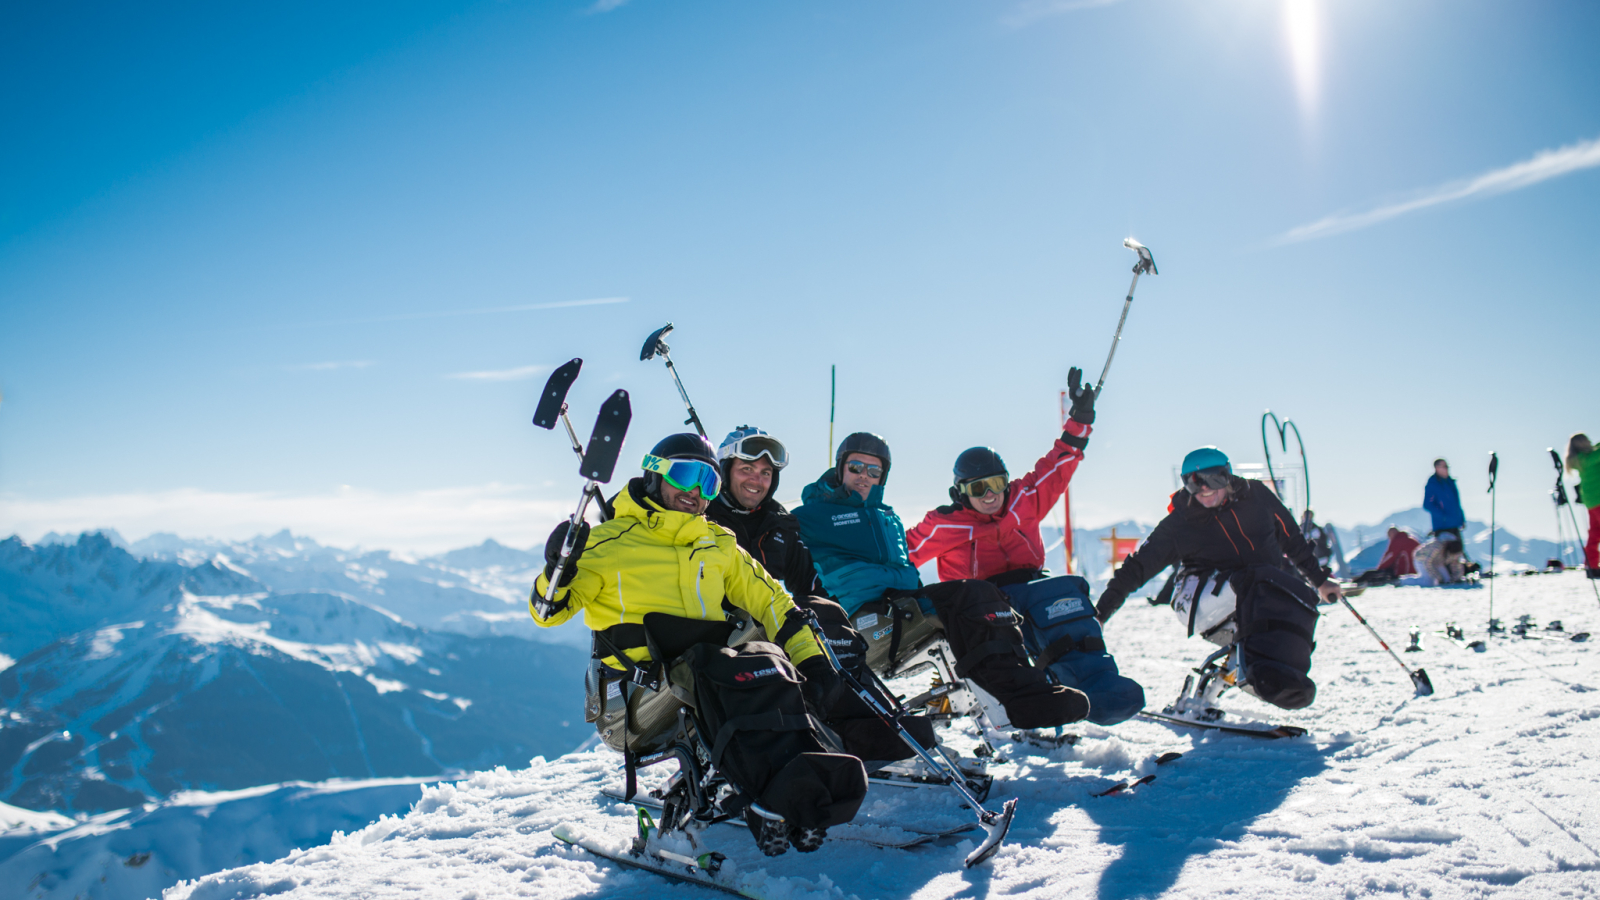 Adaptive skiing session with Oxygene